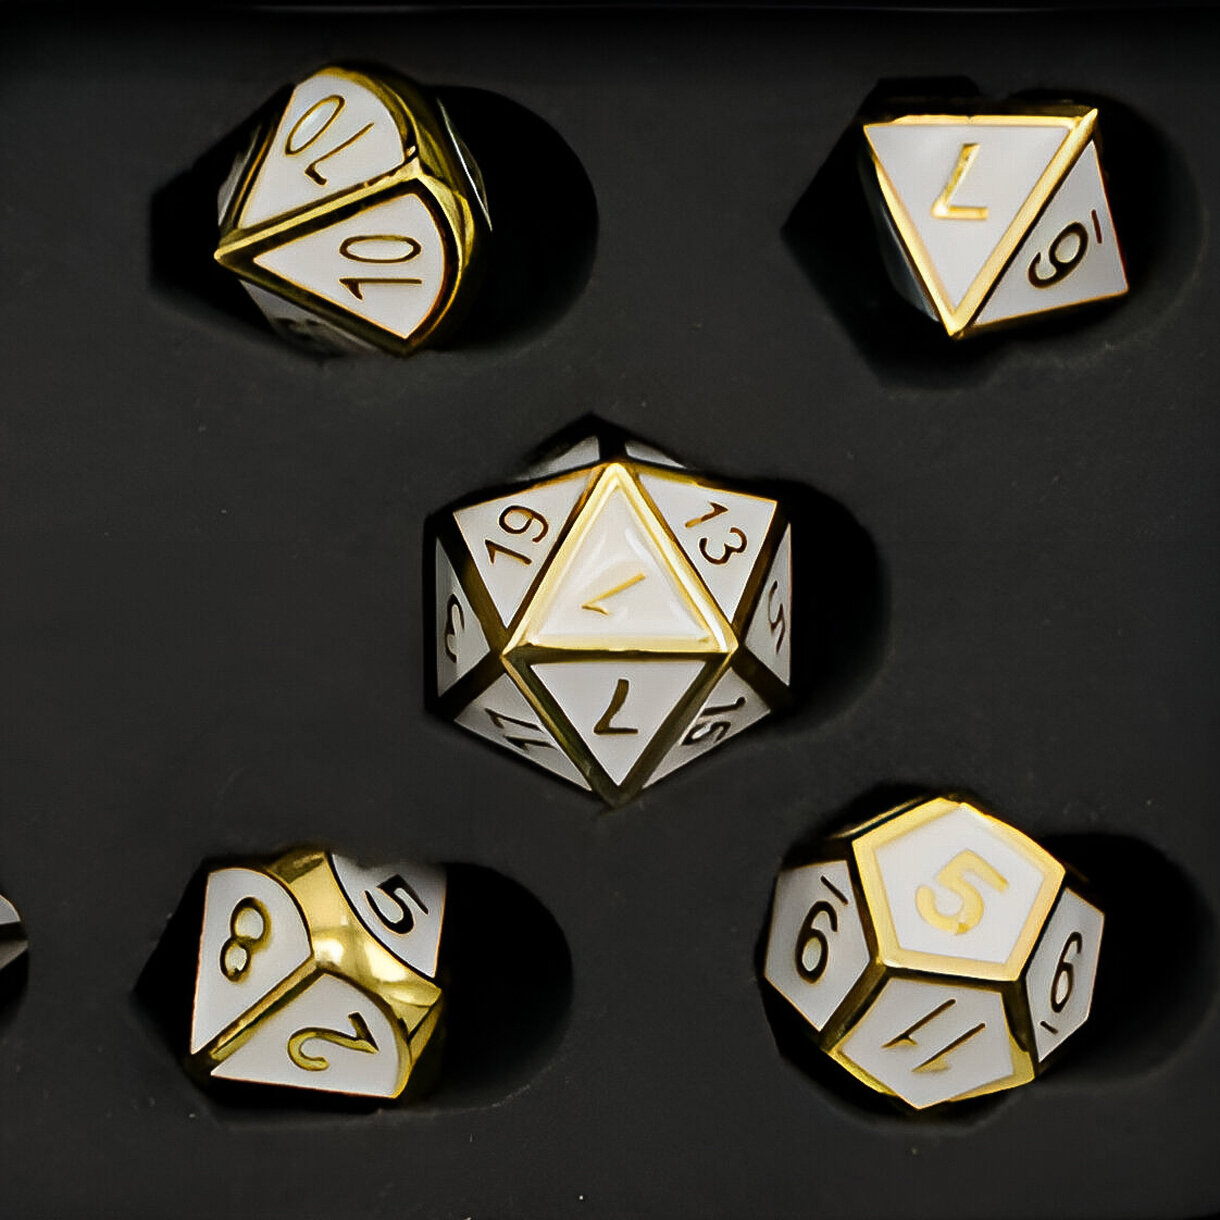 Набор металлических кубиков Stuff-pro игральных костей D4, D6, D8, D10-2, D12, D20 золотой с белым